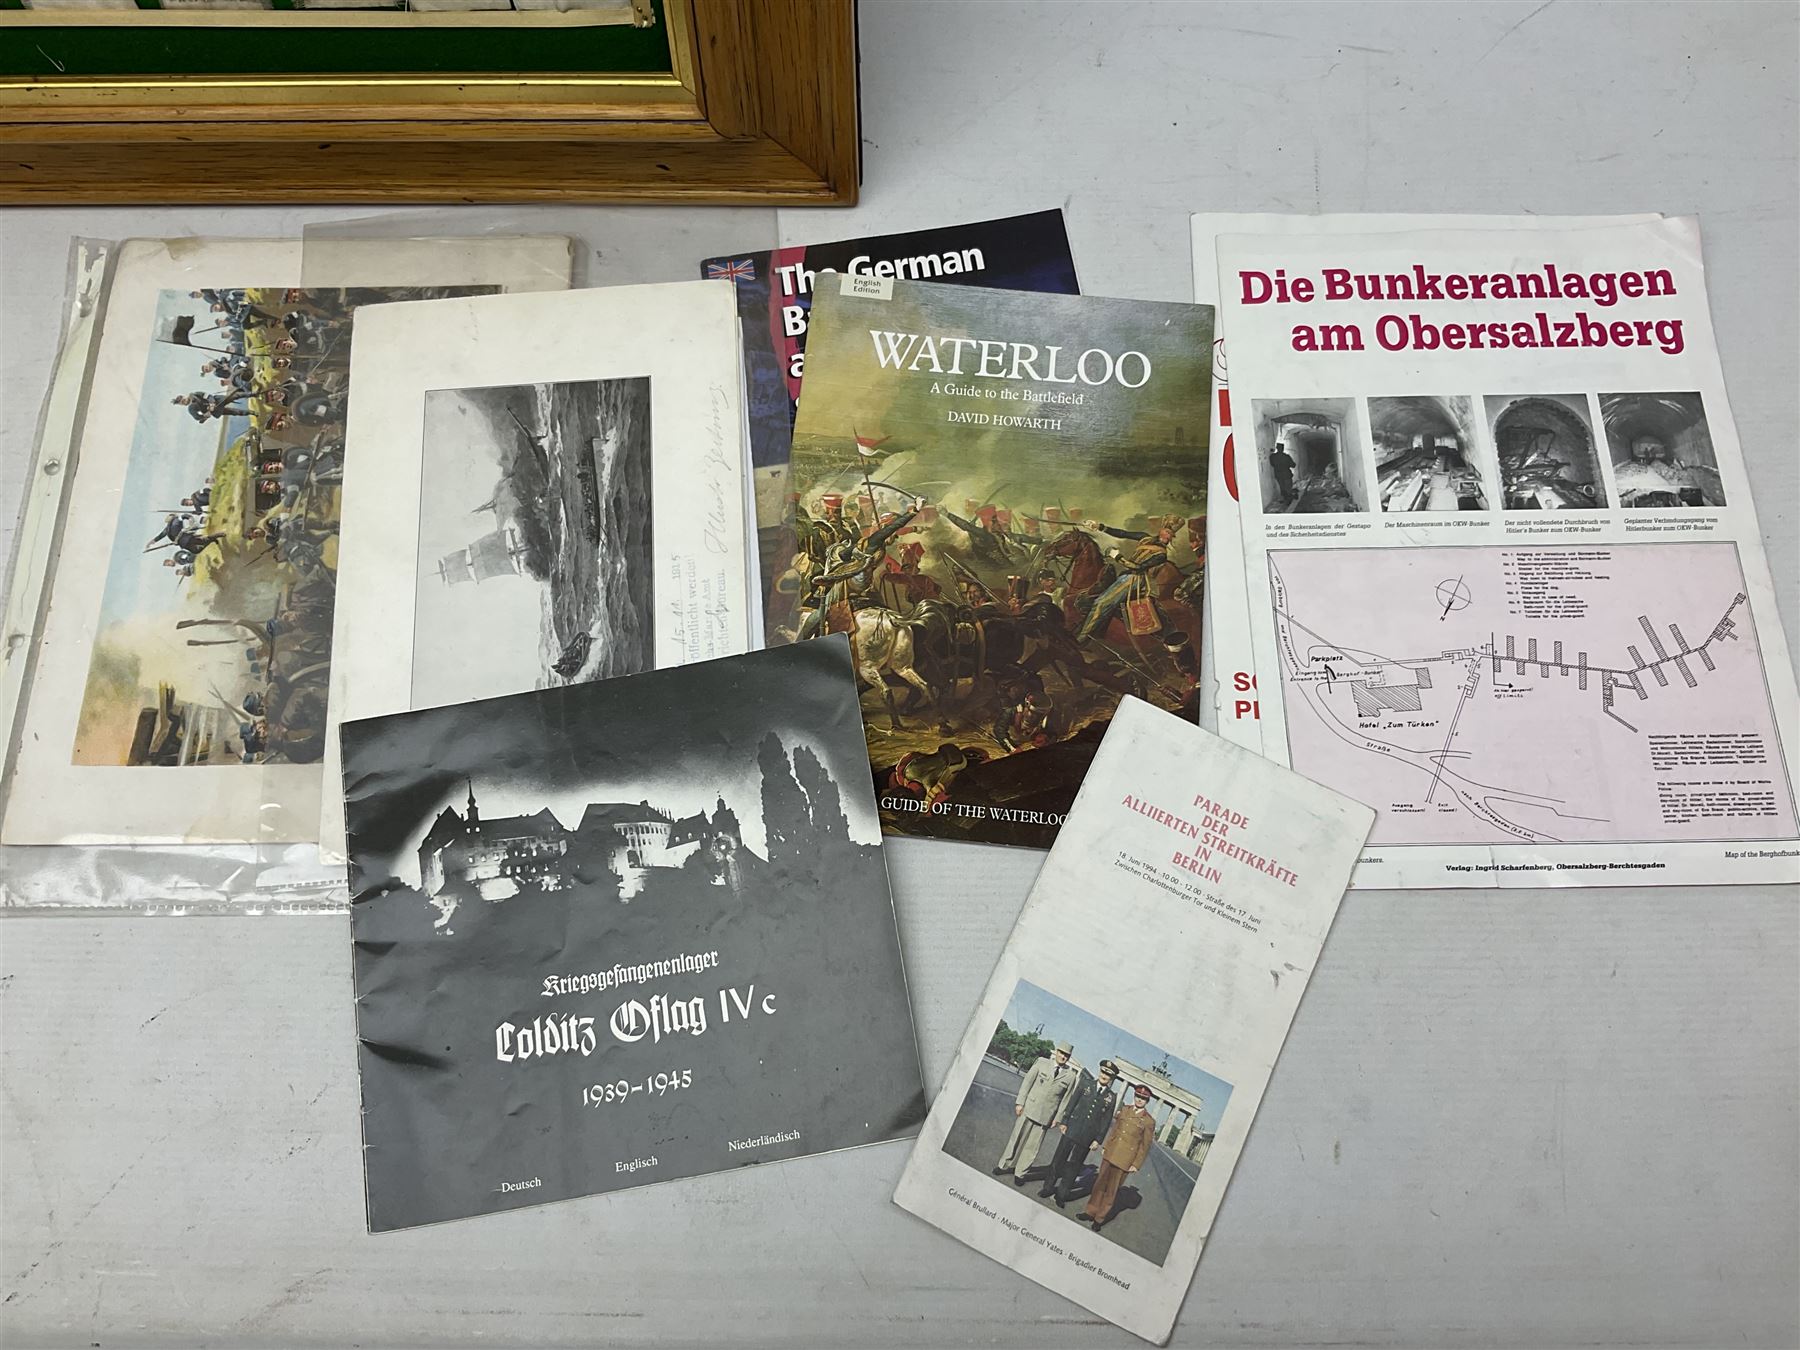 Der Weltkrieg cigarette card album by Cigaretten - Bilderdienst Dresden partially stocked with WW1 i - Image 22 of 24